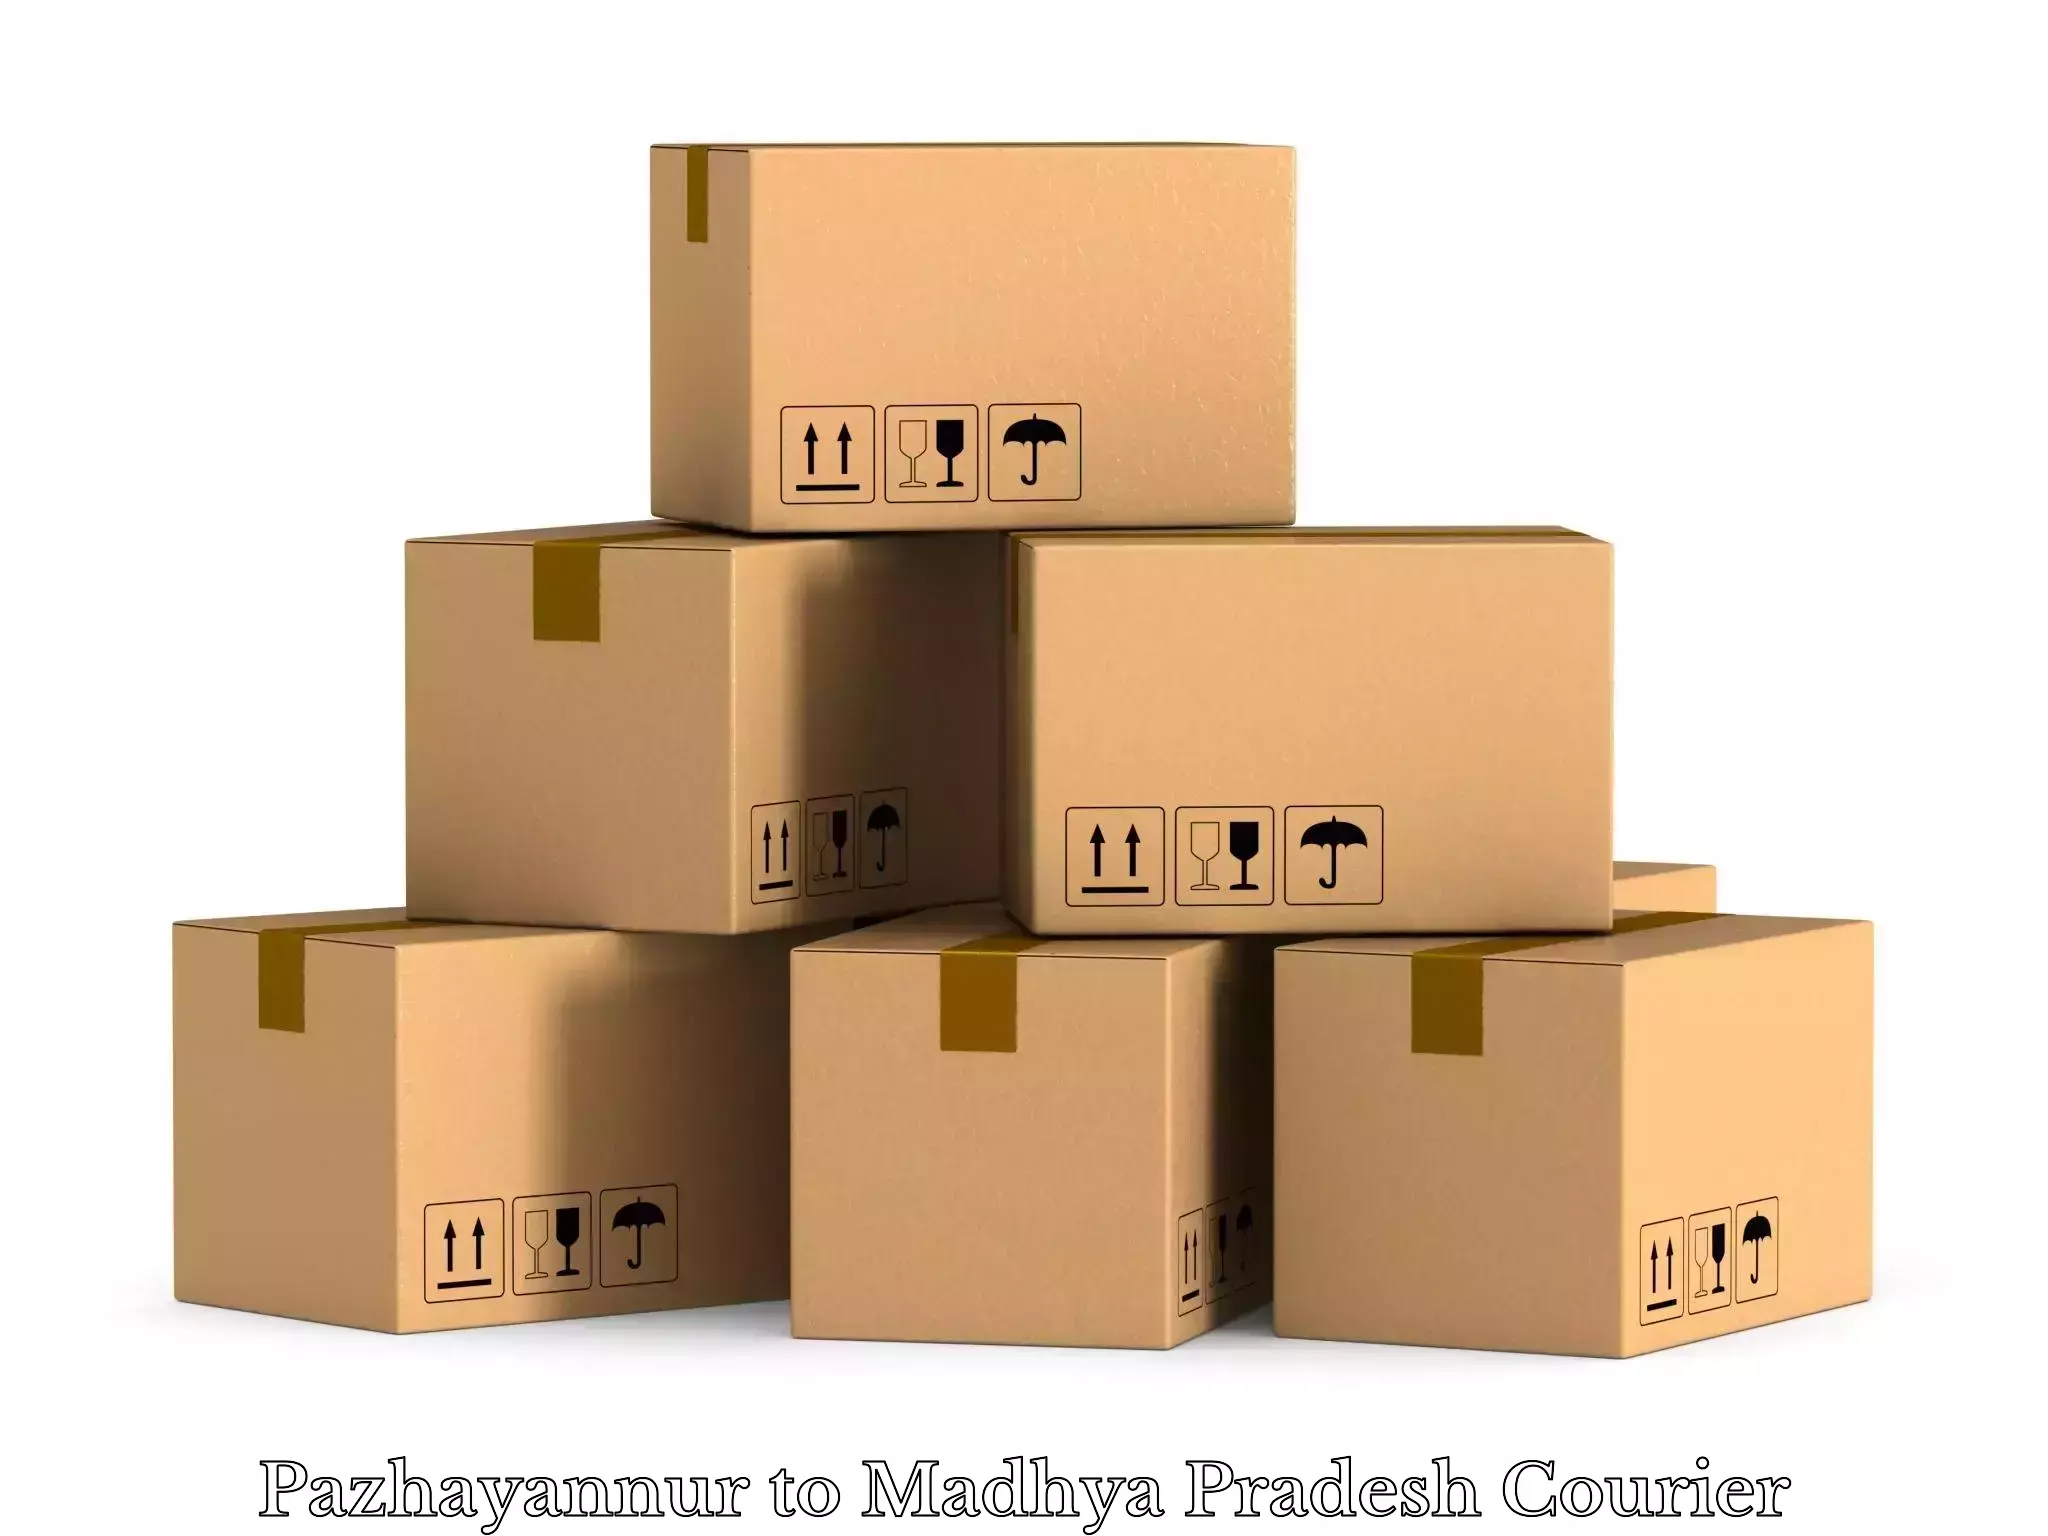 Luggage transport company Pazhayannur to Madhya Pradesh